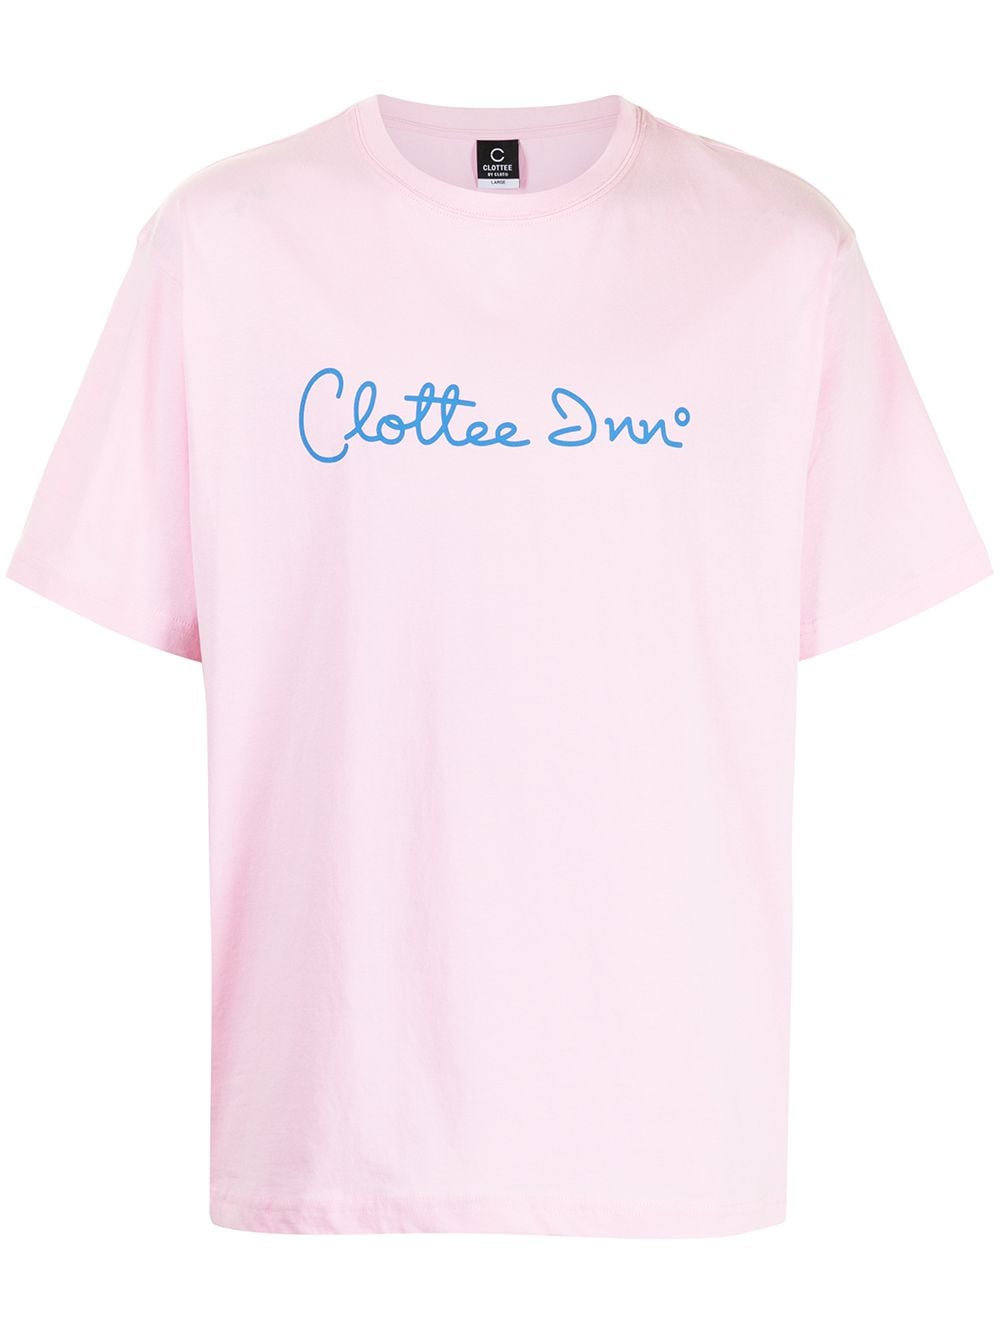 фото Clot футболка clottee inn с графичным принтом